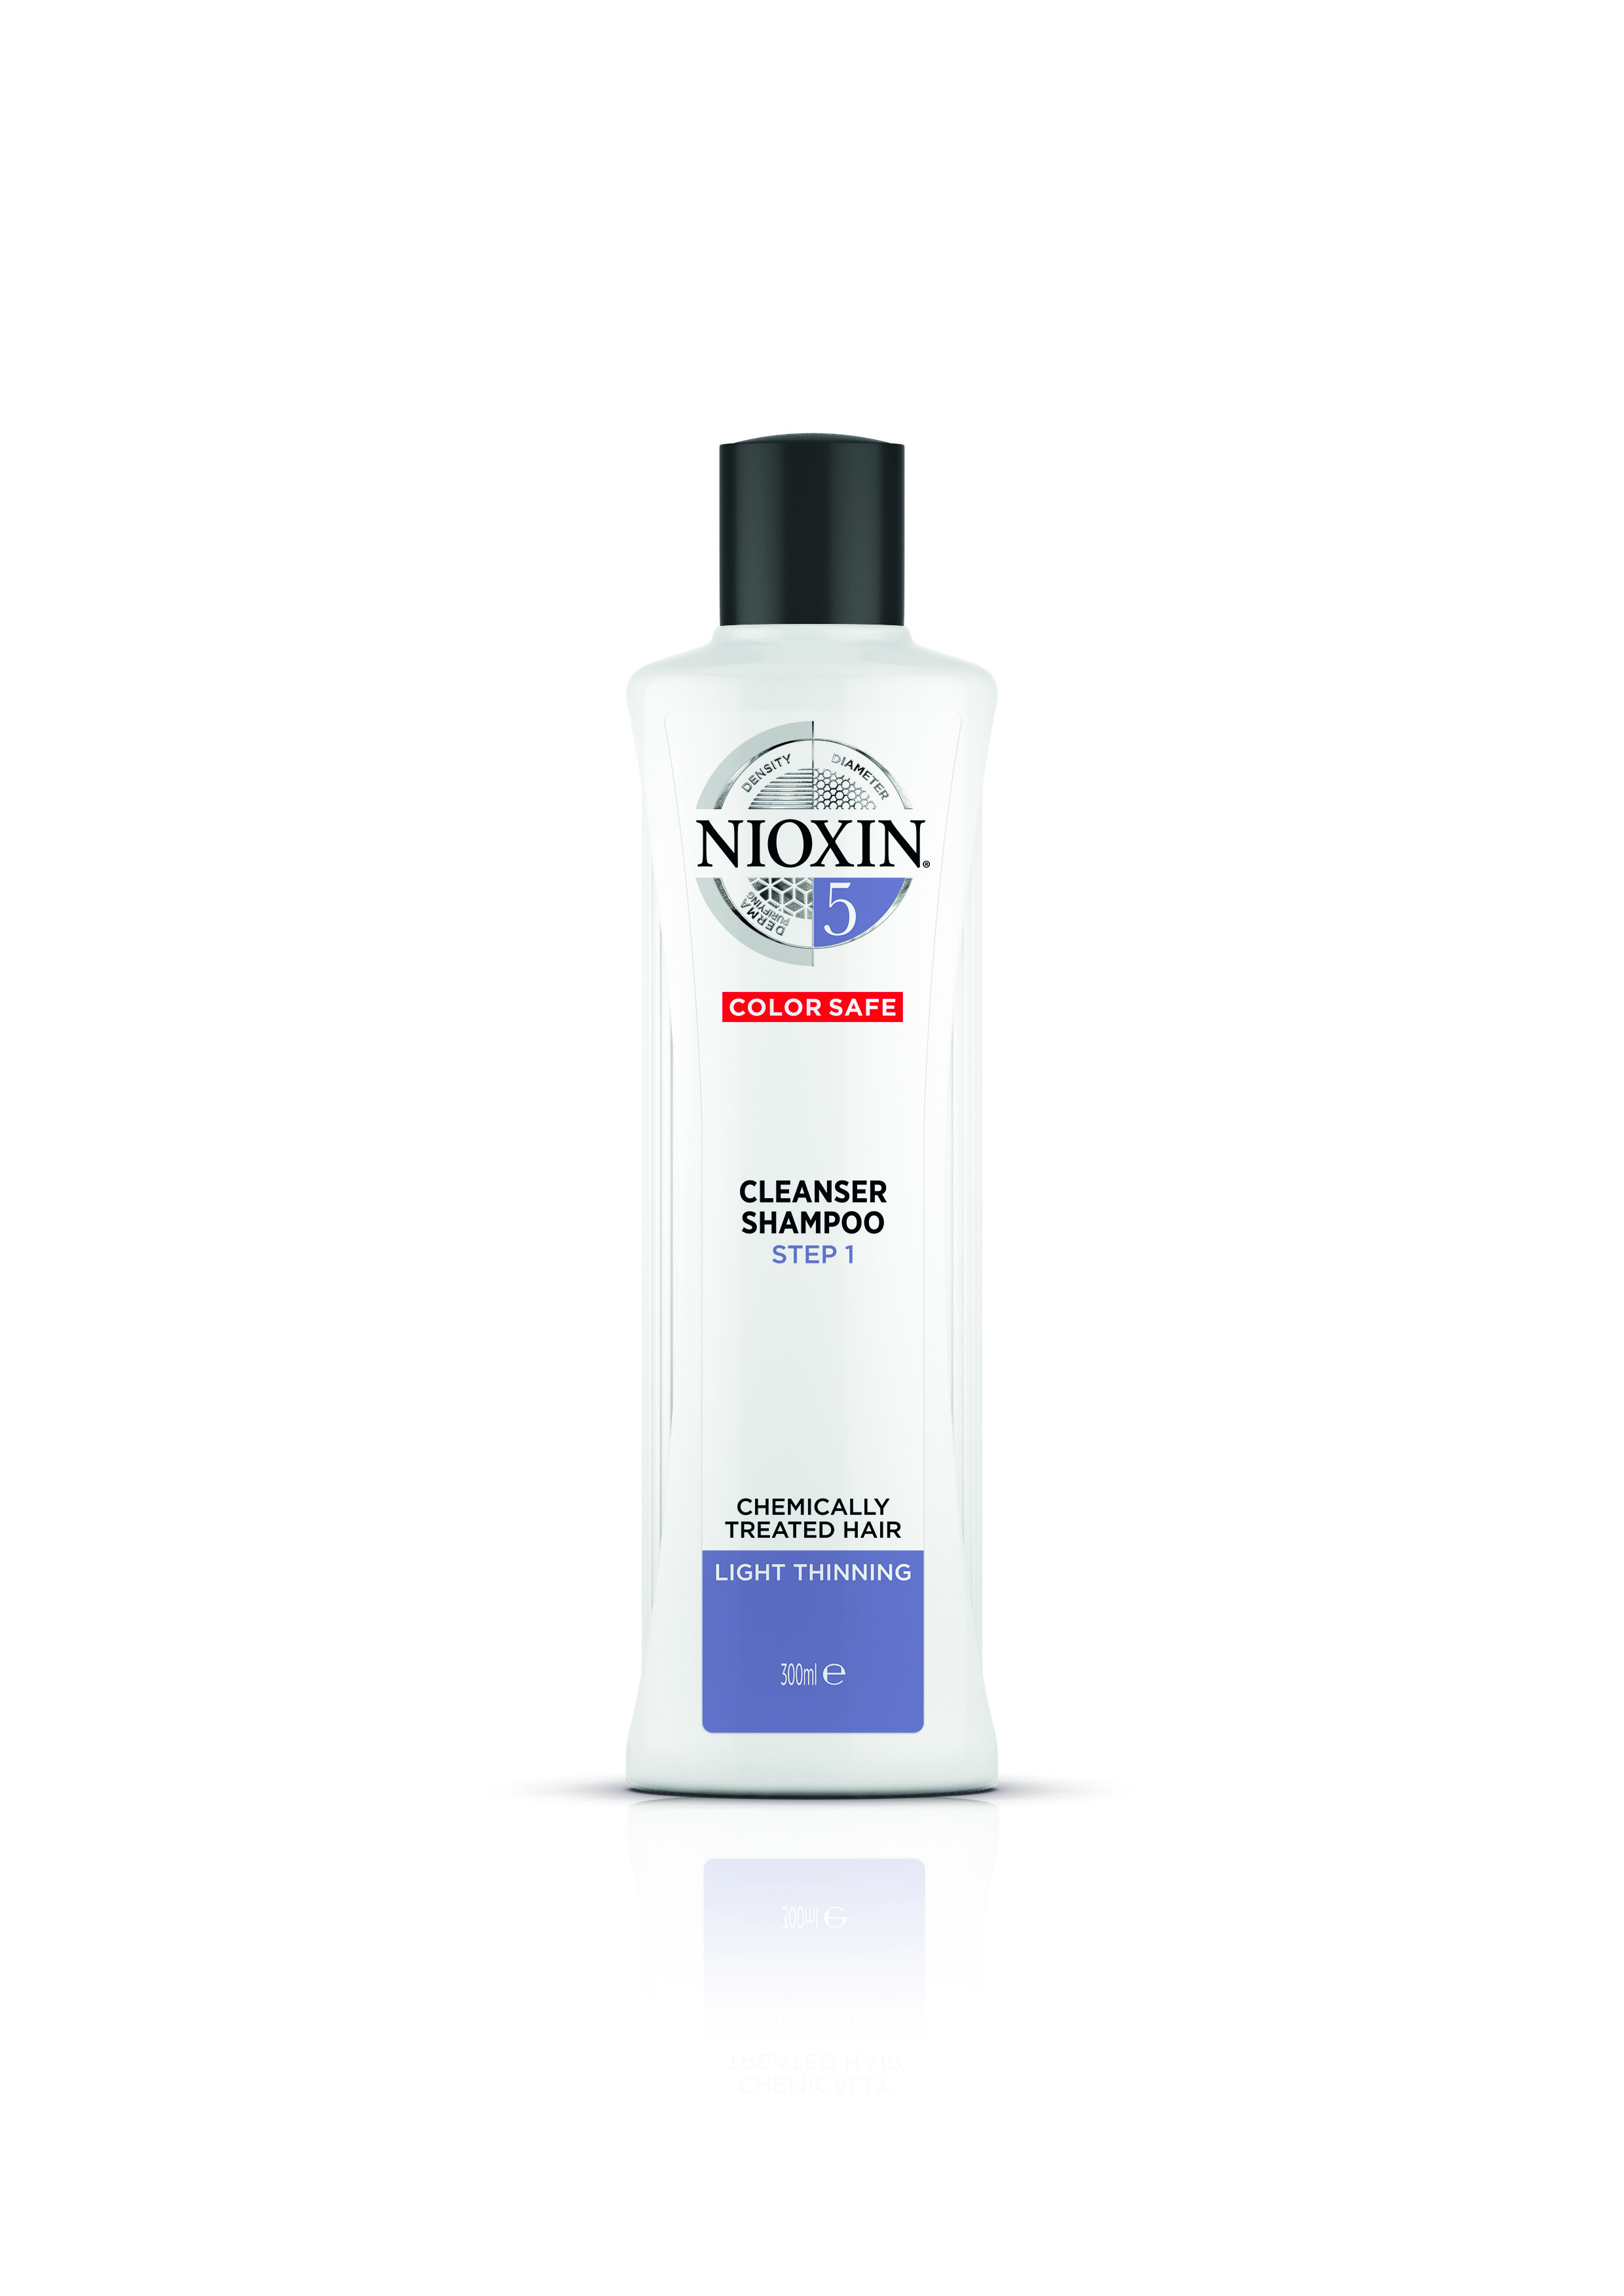 NIOXIN Шампунь очищающий для жестких натуральных и окрашенных волос, Система 5, 300 мл очищающий шампунь система 2 81630627 7981 7741 4470 300 мл